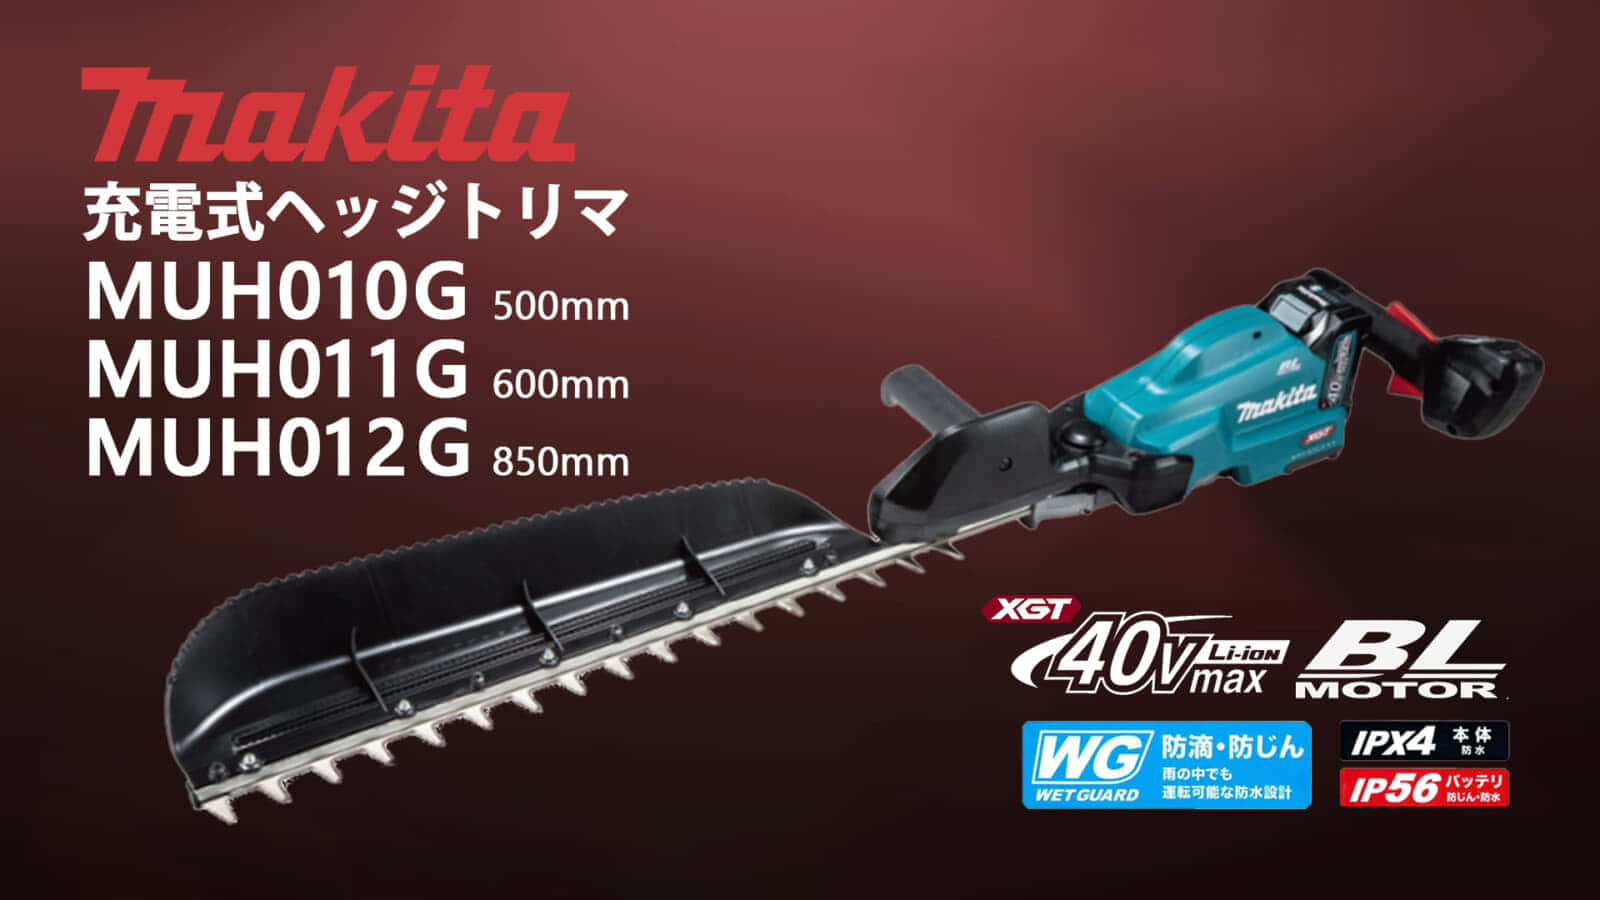 マキタ MUH010Gシリーズ 充電式ヘッジトリマ、片刃仕様の最長850mm刃